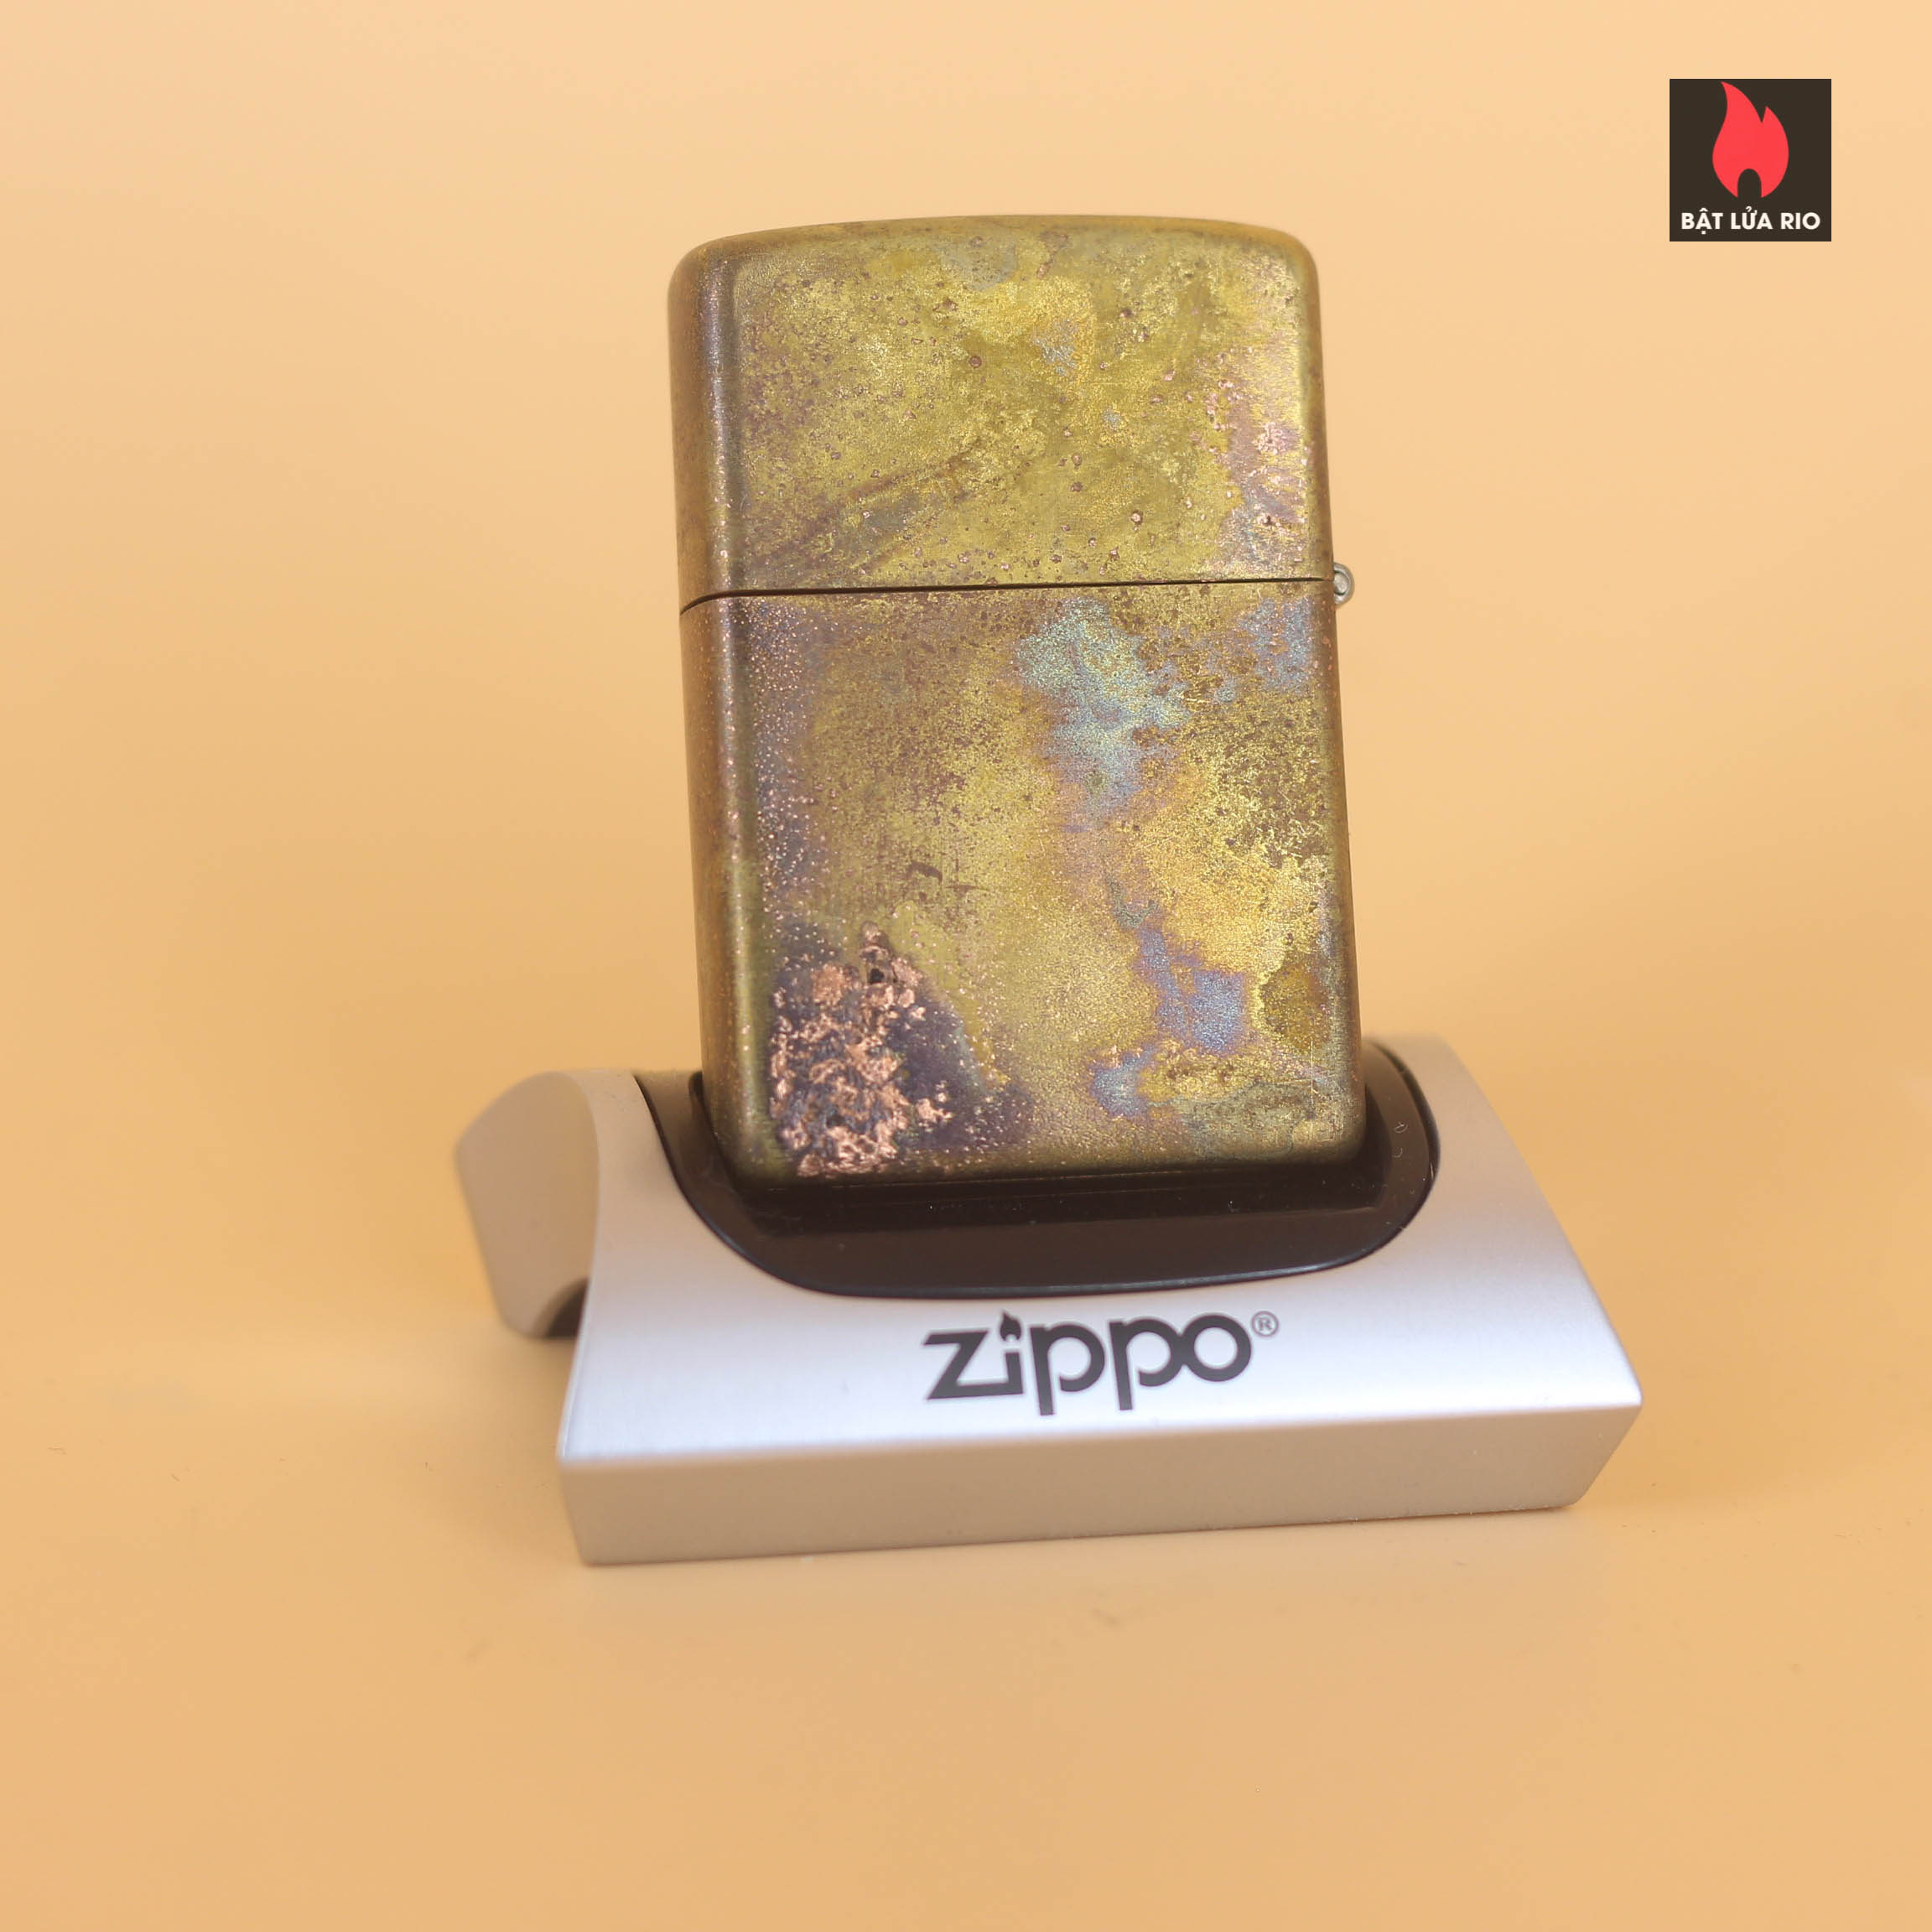 Vỏ Zippo 1970 – Đồng Nguyên Khối - Không Ruột - Trơn 2 Mặt 1